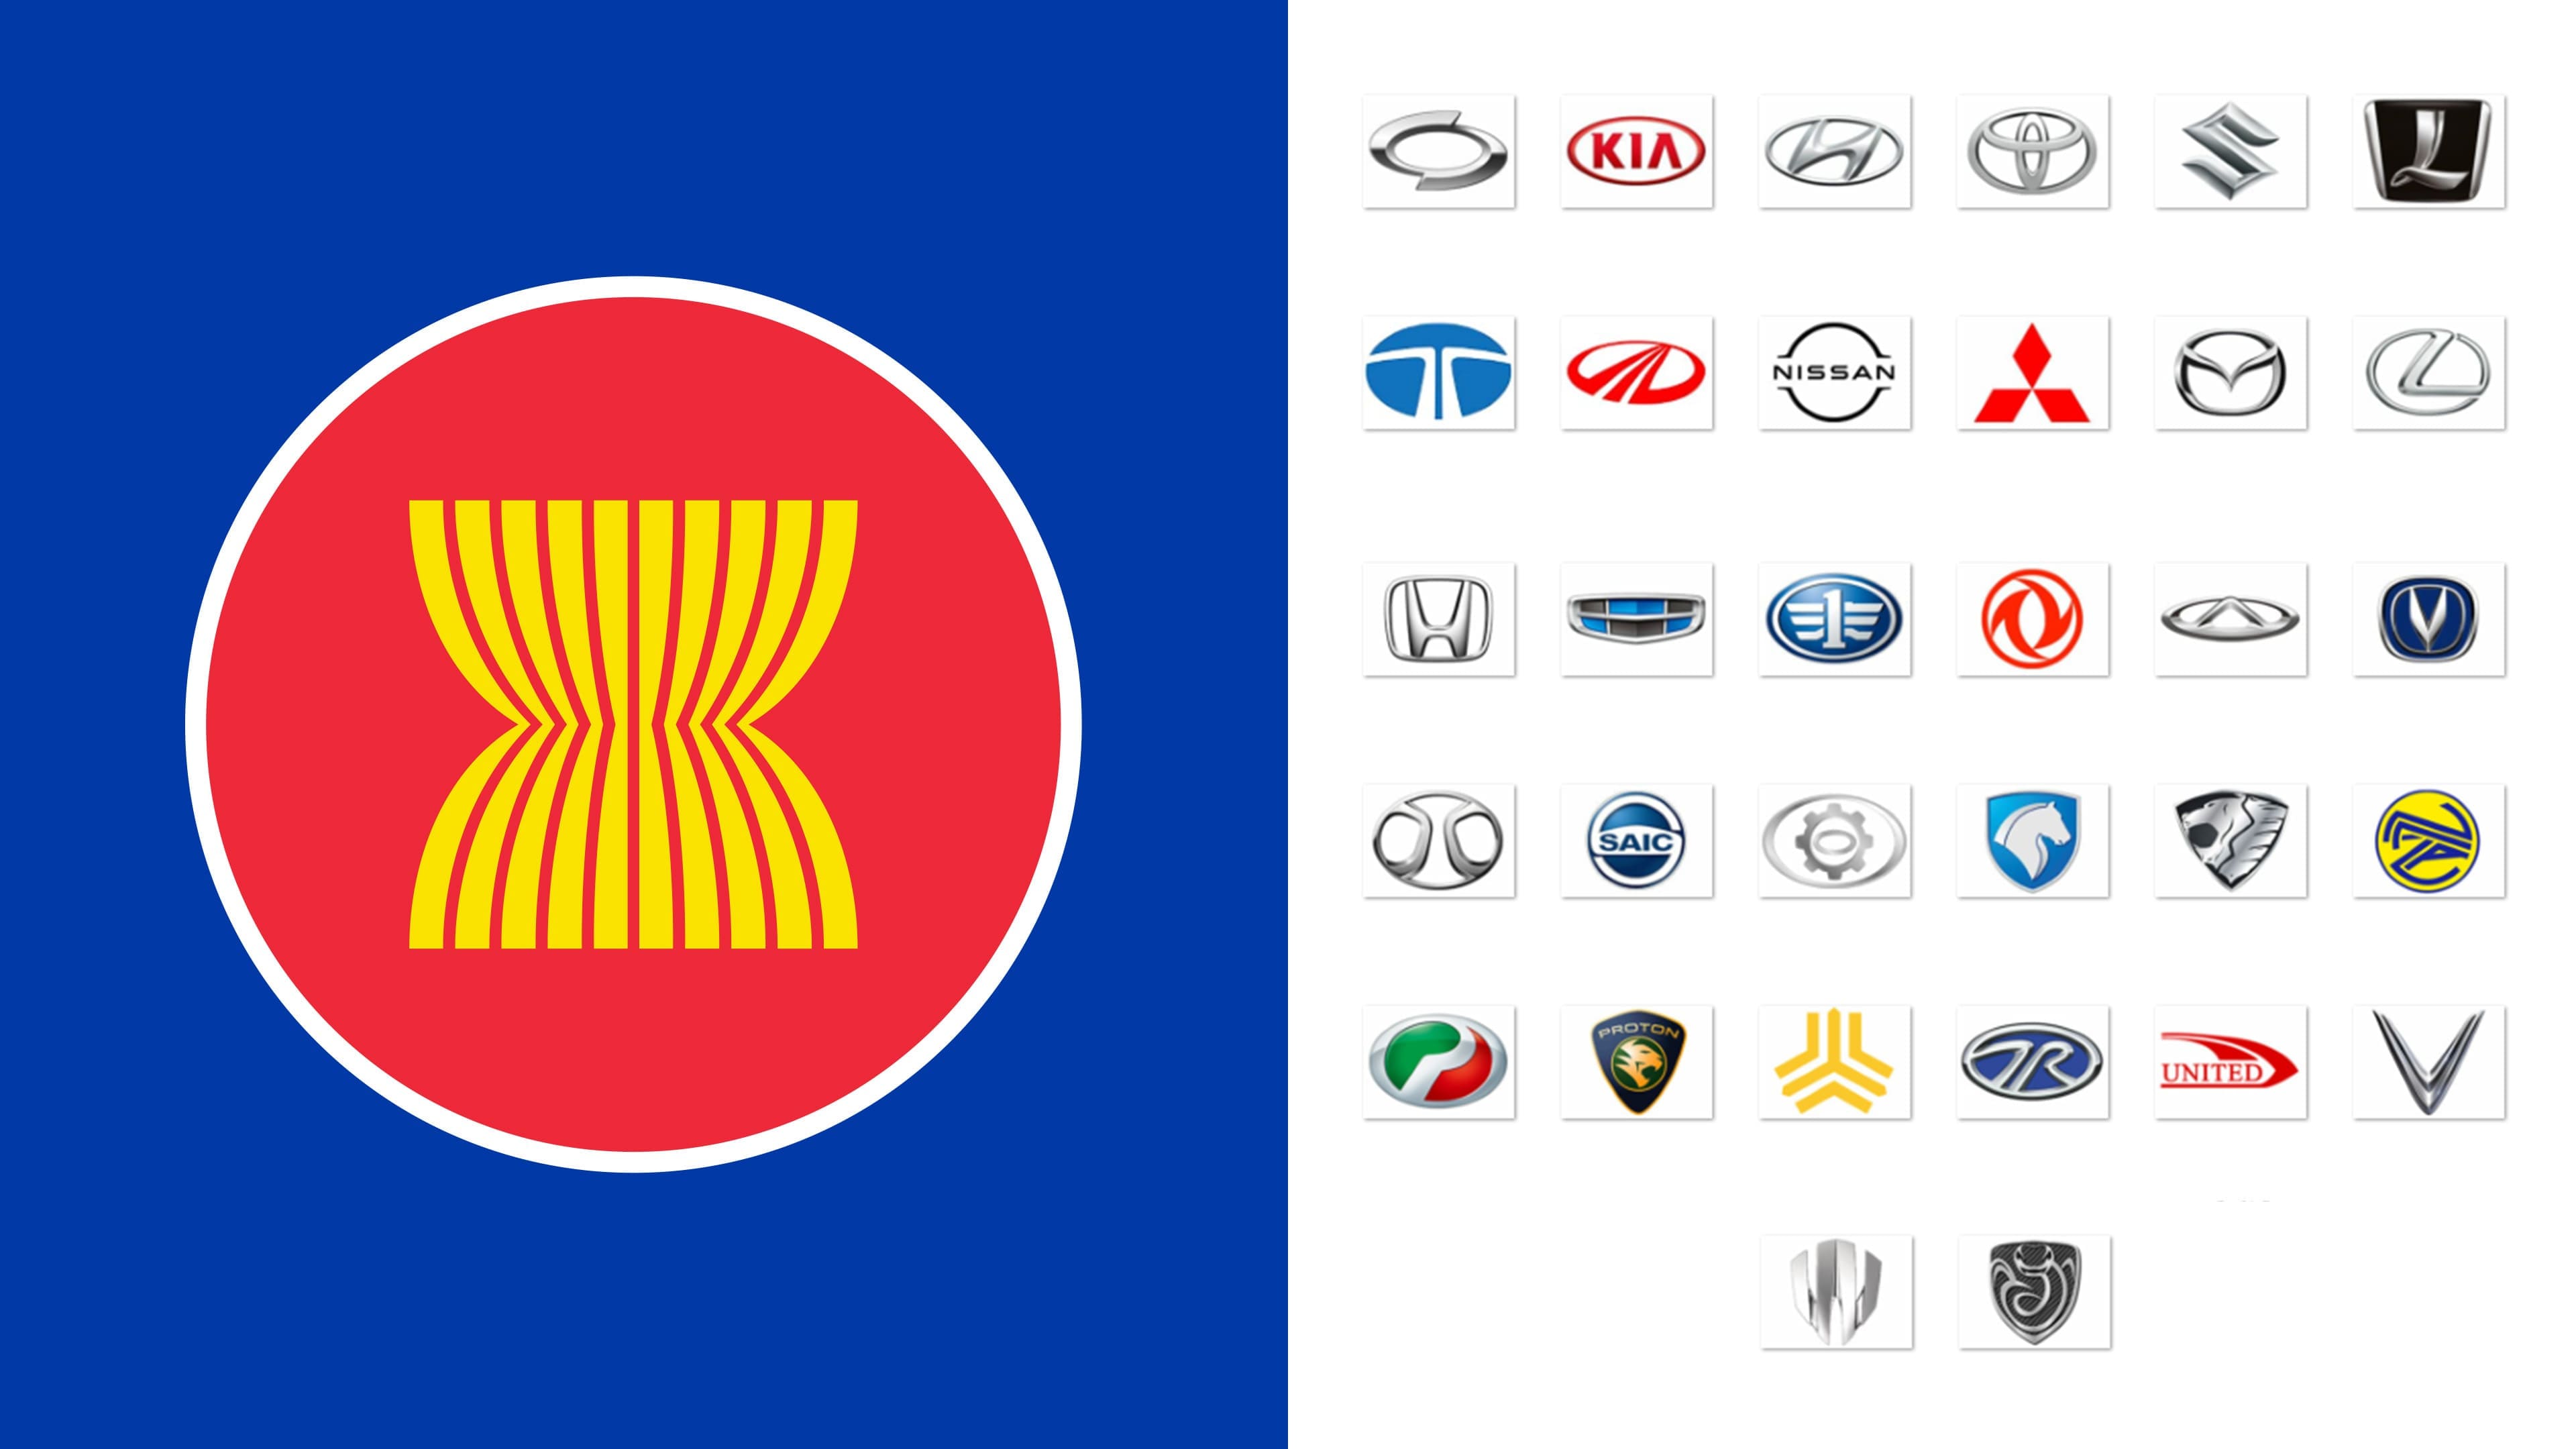 Korean Car Companies In America